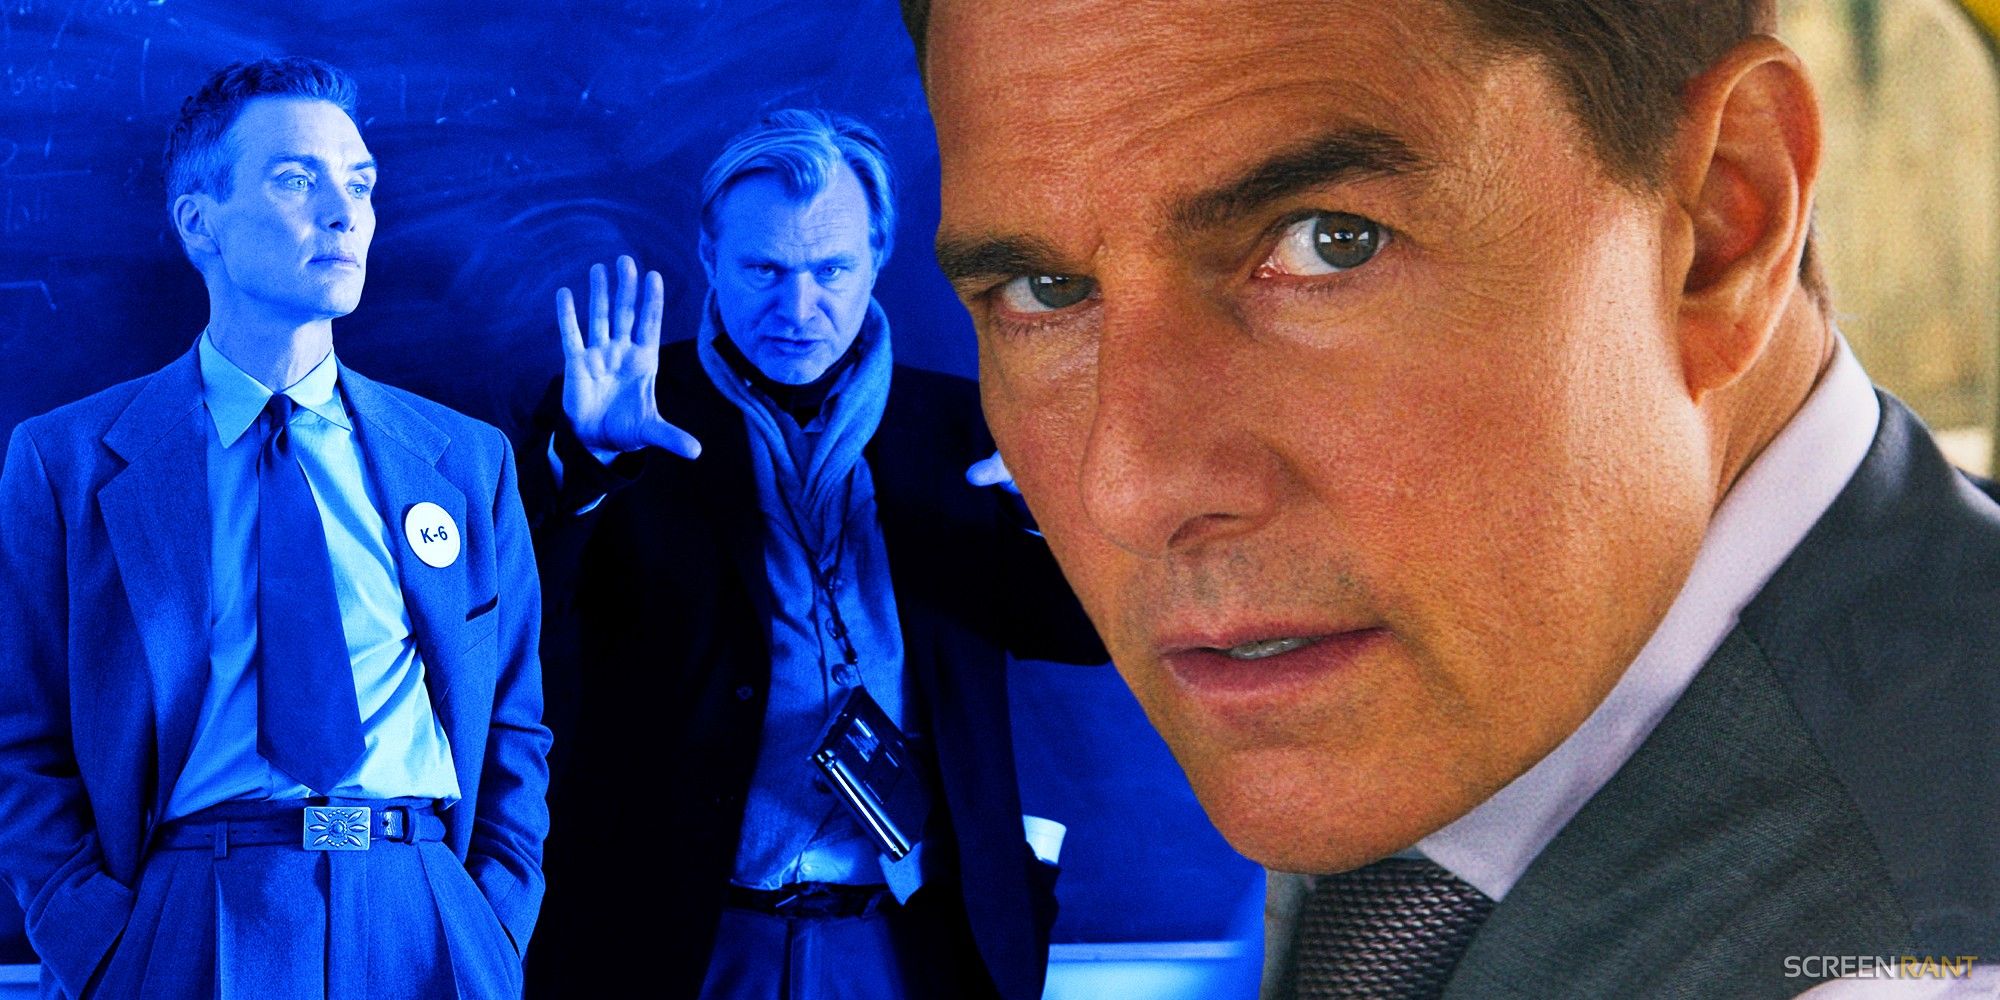 Christopher Nolan es la elección perfecta para salvar una franquicia olvidada de Tom Cruise